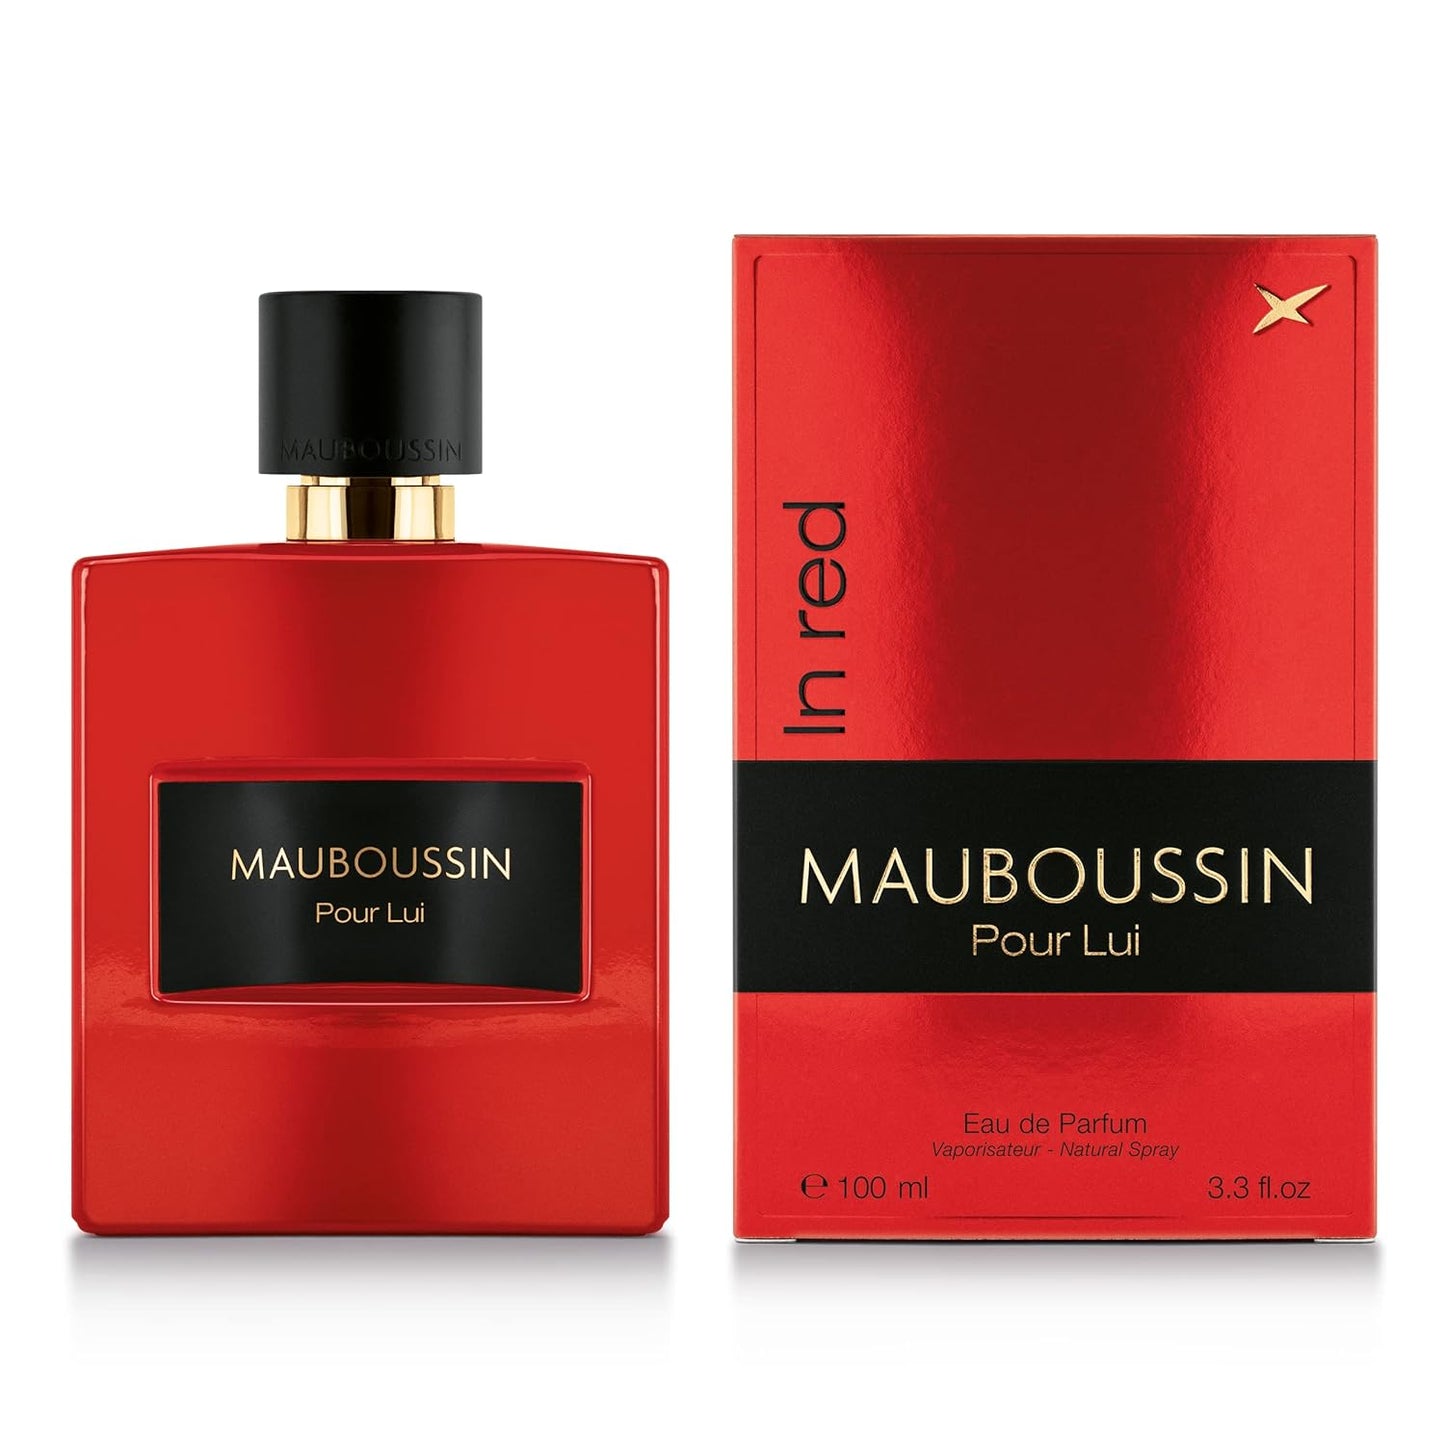 Mauboussin - Pour Lui In Red 100ml (3.3 Fl Oz) - Eau de Parfum for Men - Woody & Spicy Scents